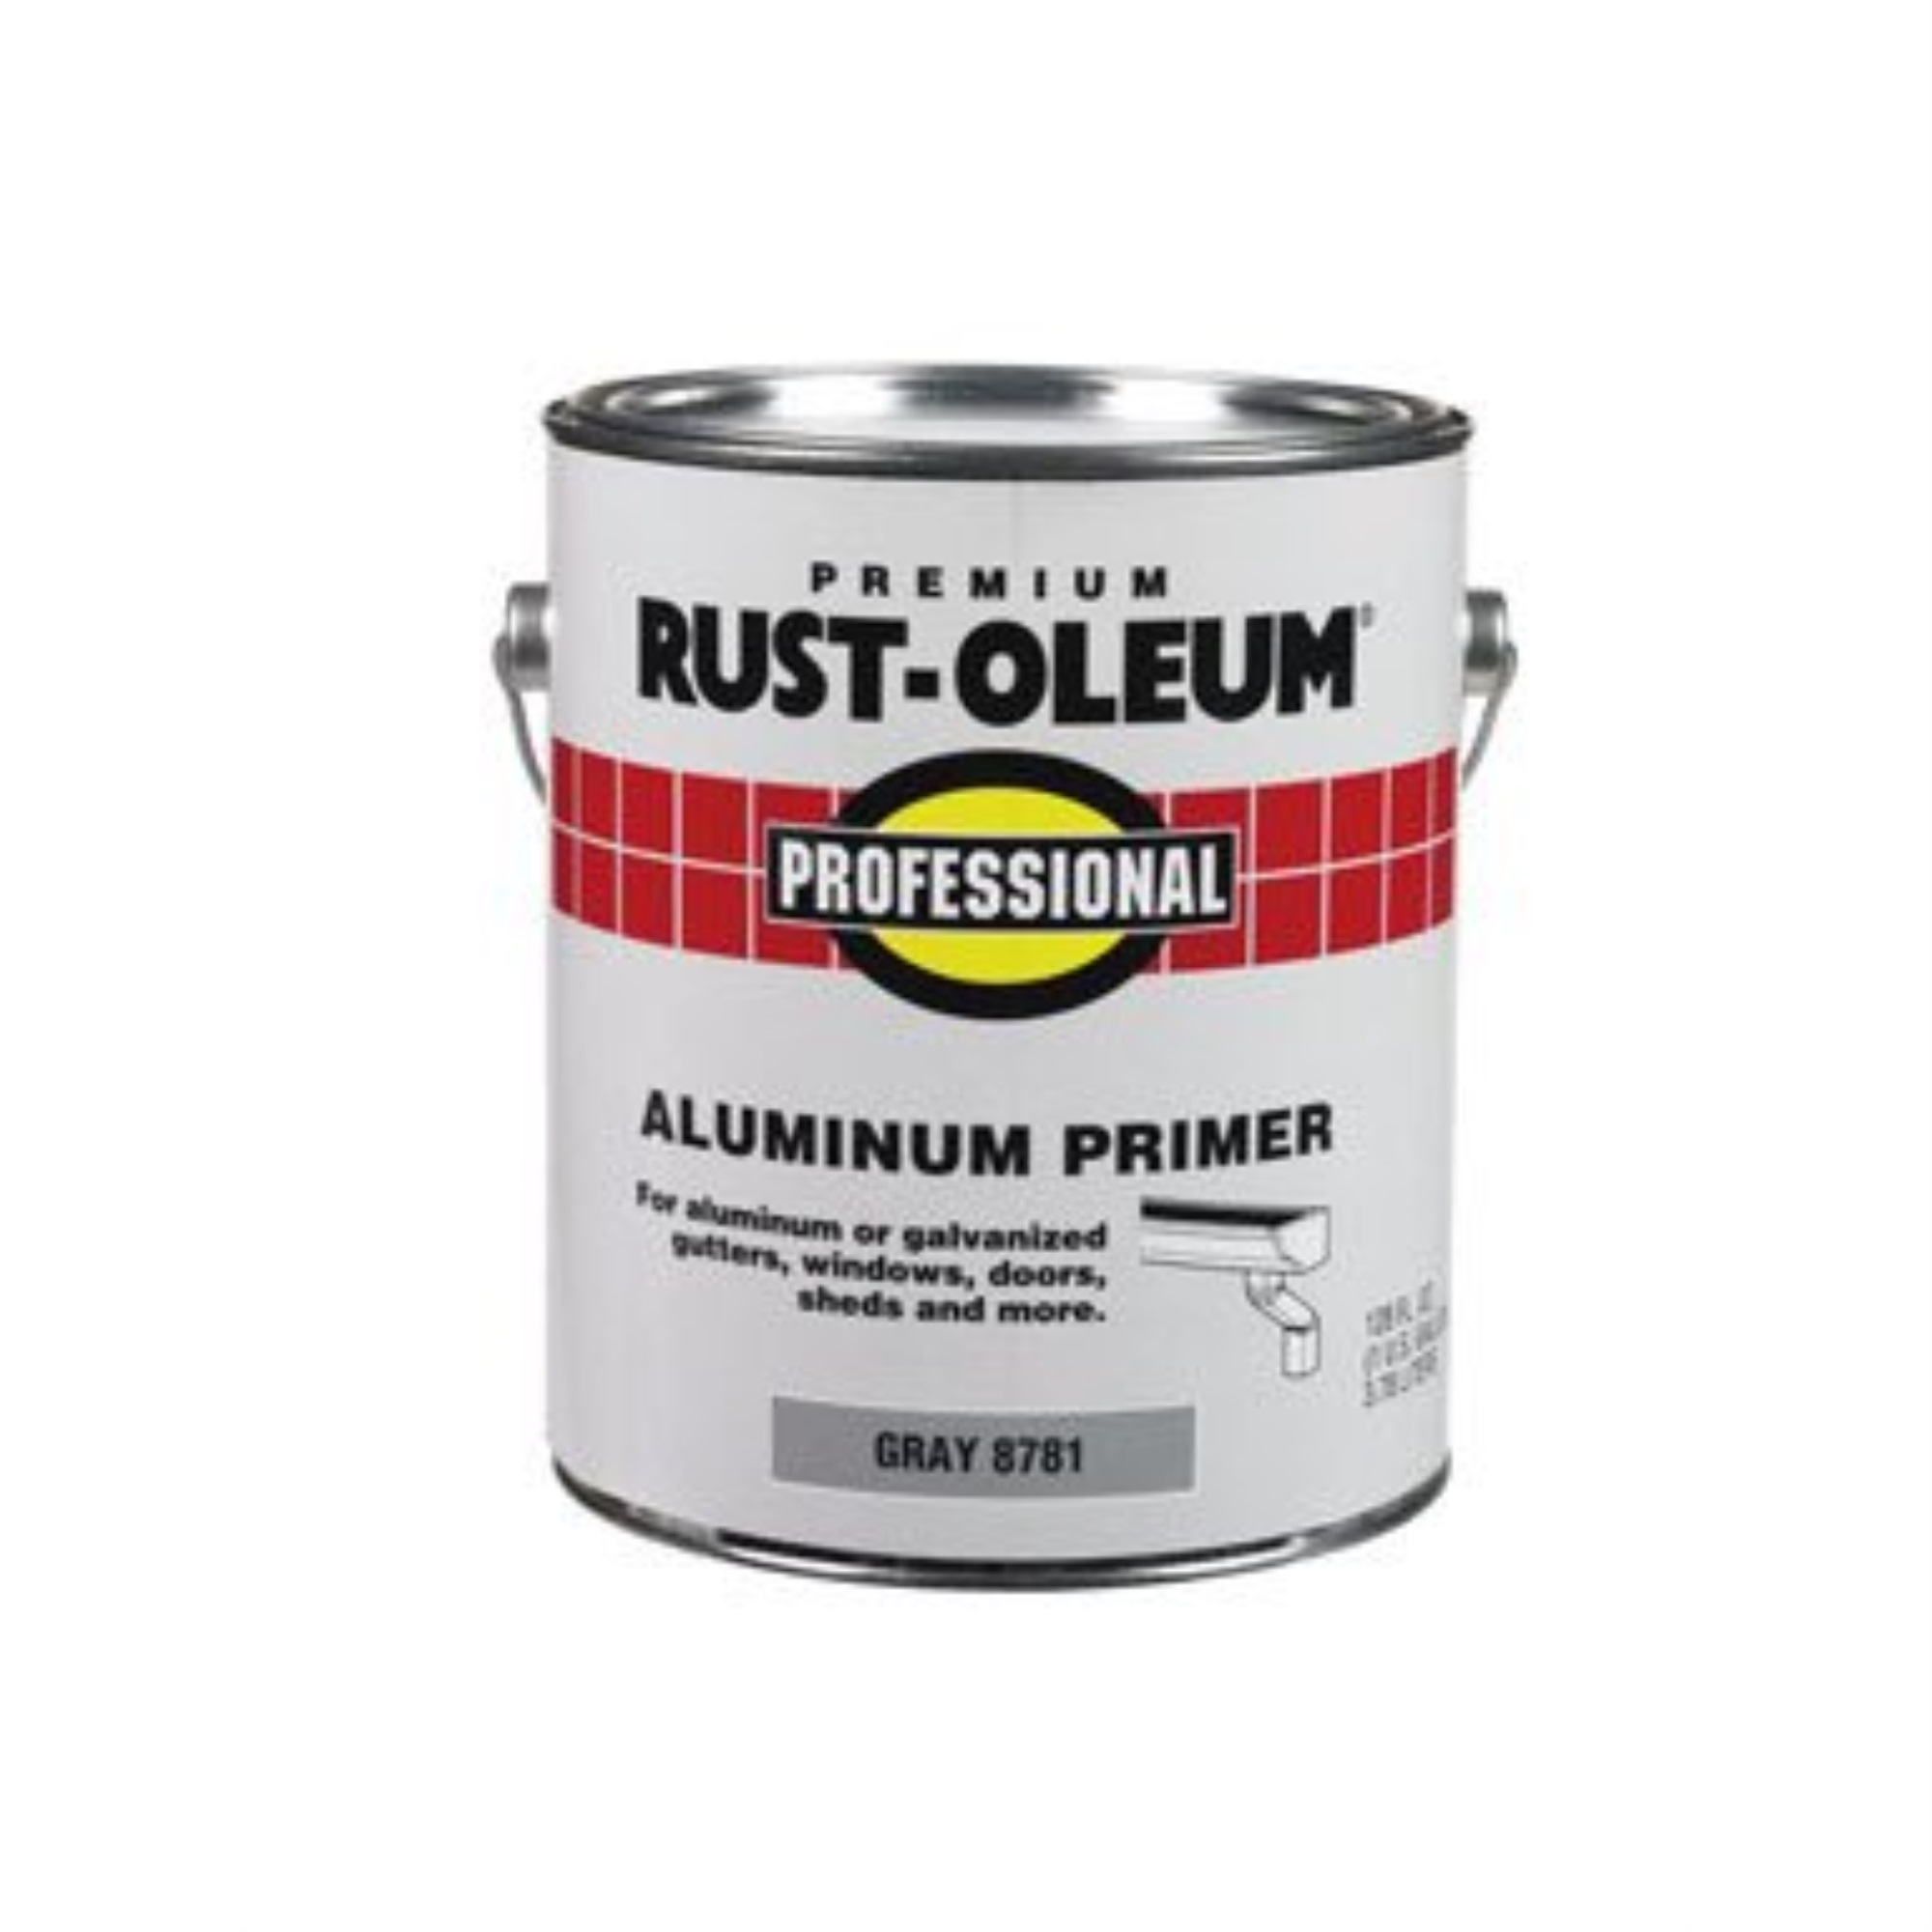 Rust-Oleum 8781402 Professional Aluminum Primer Gallon Grey